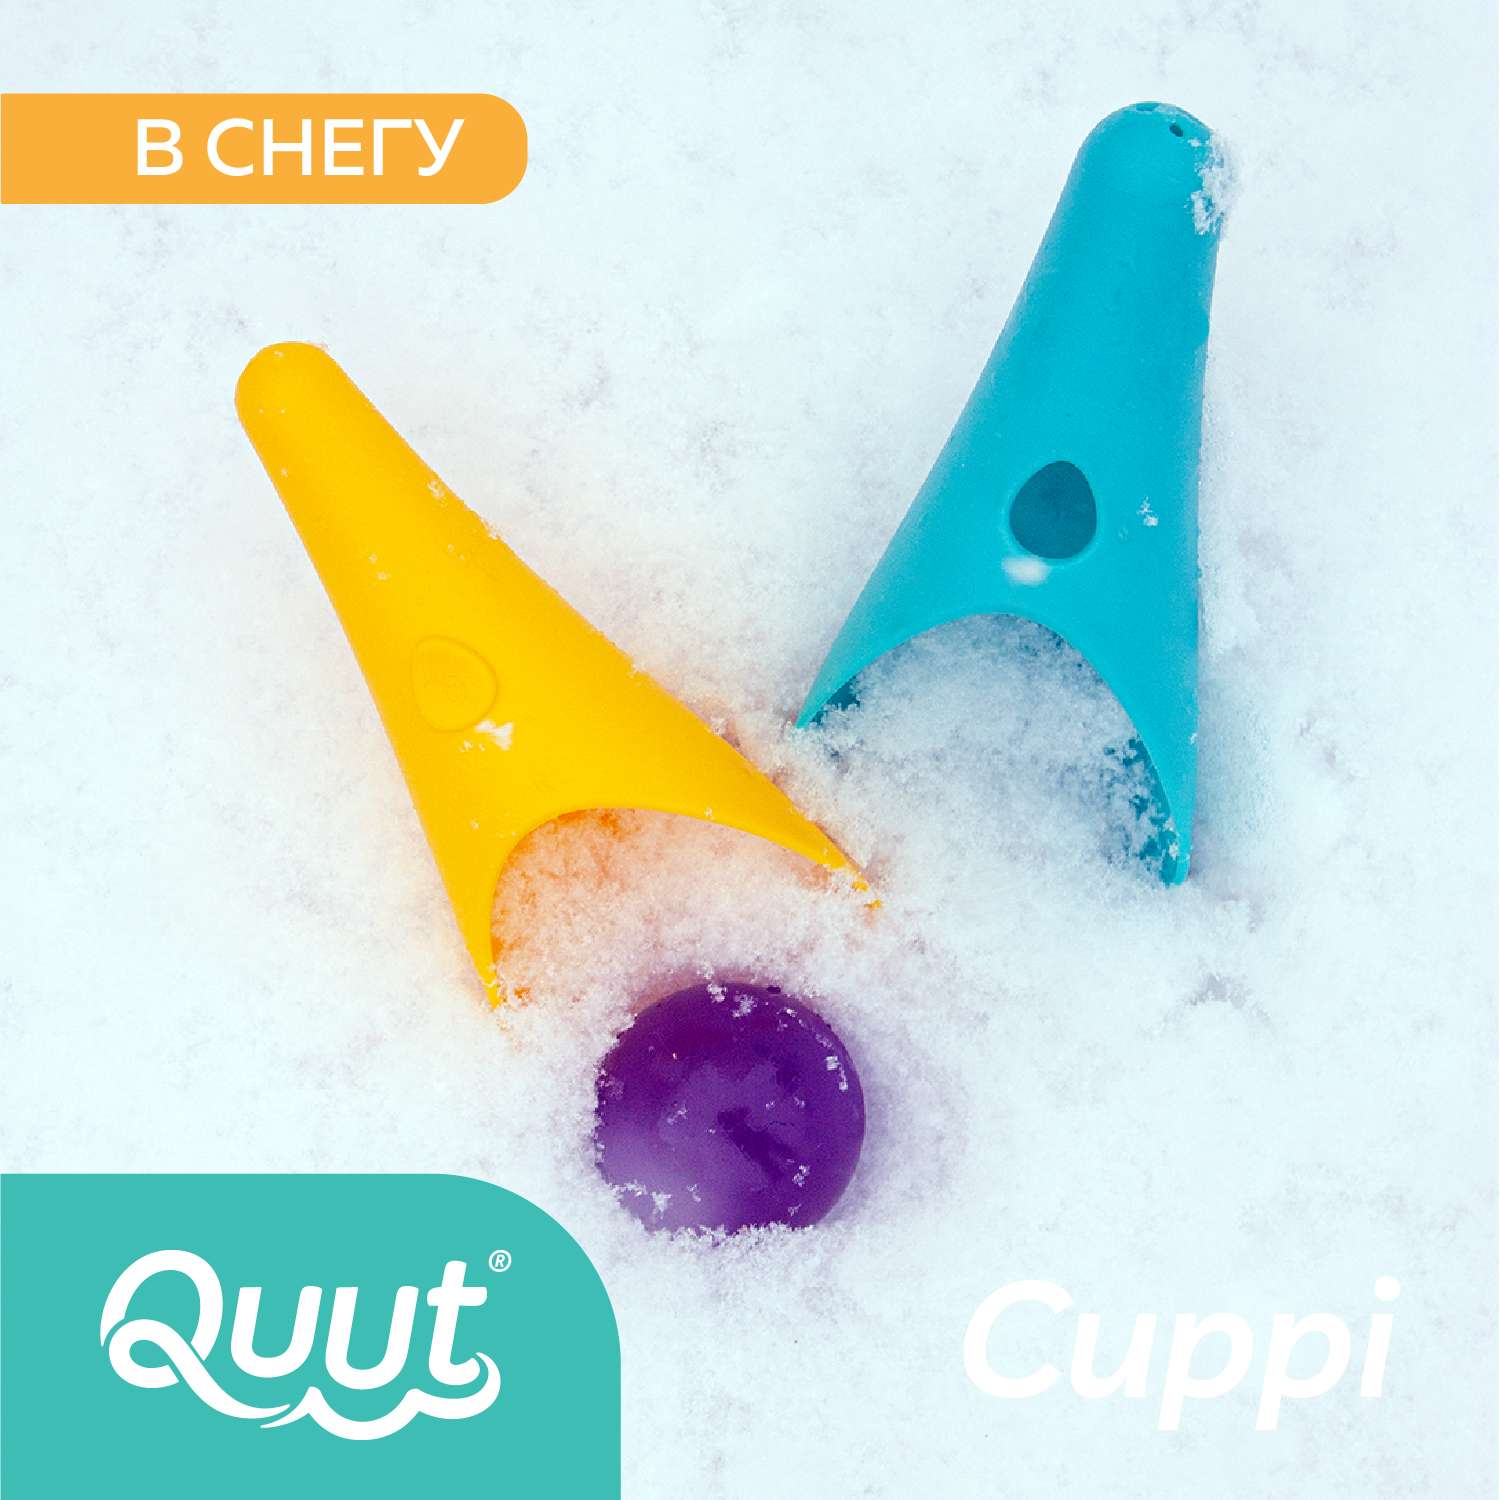 Набор для песка и снега QUUT Cuppi банановый и синий + красный мячик - фото 5